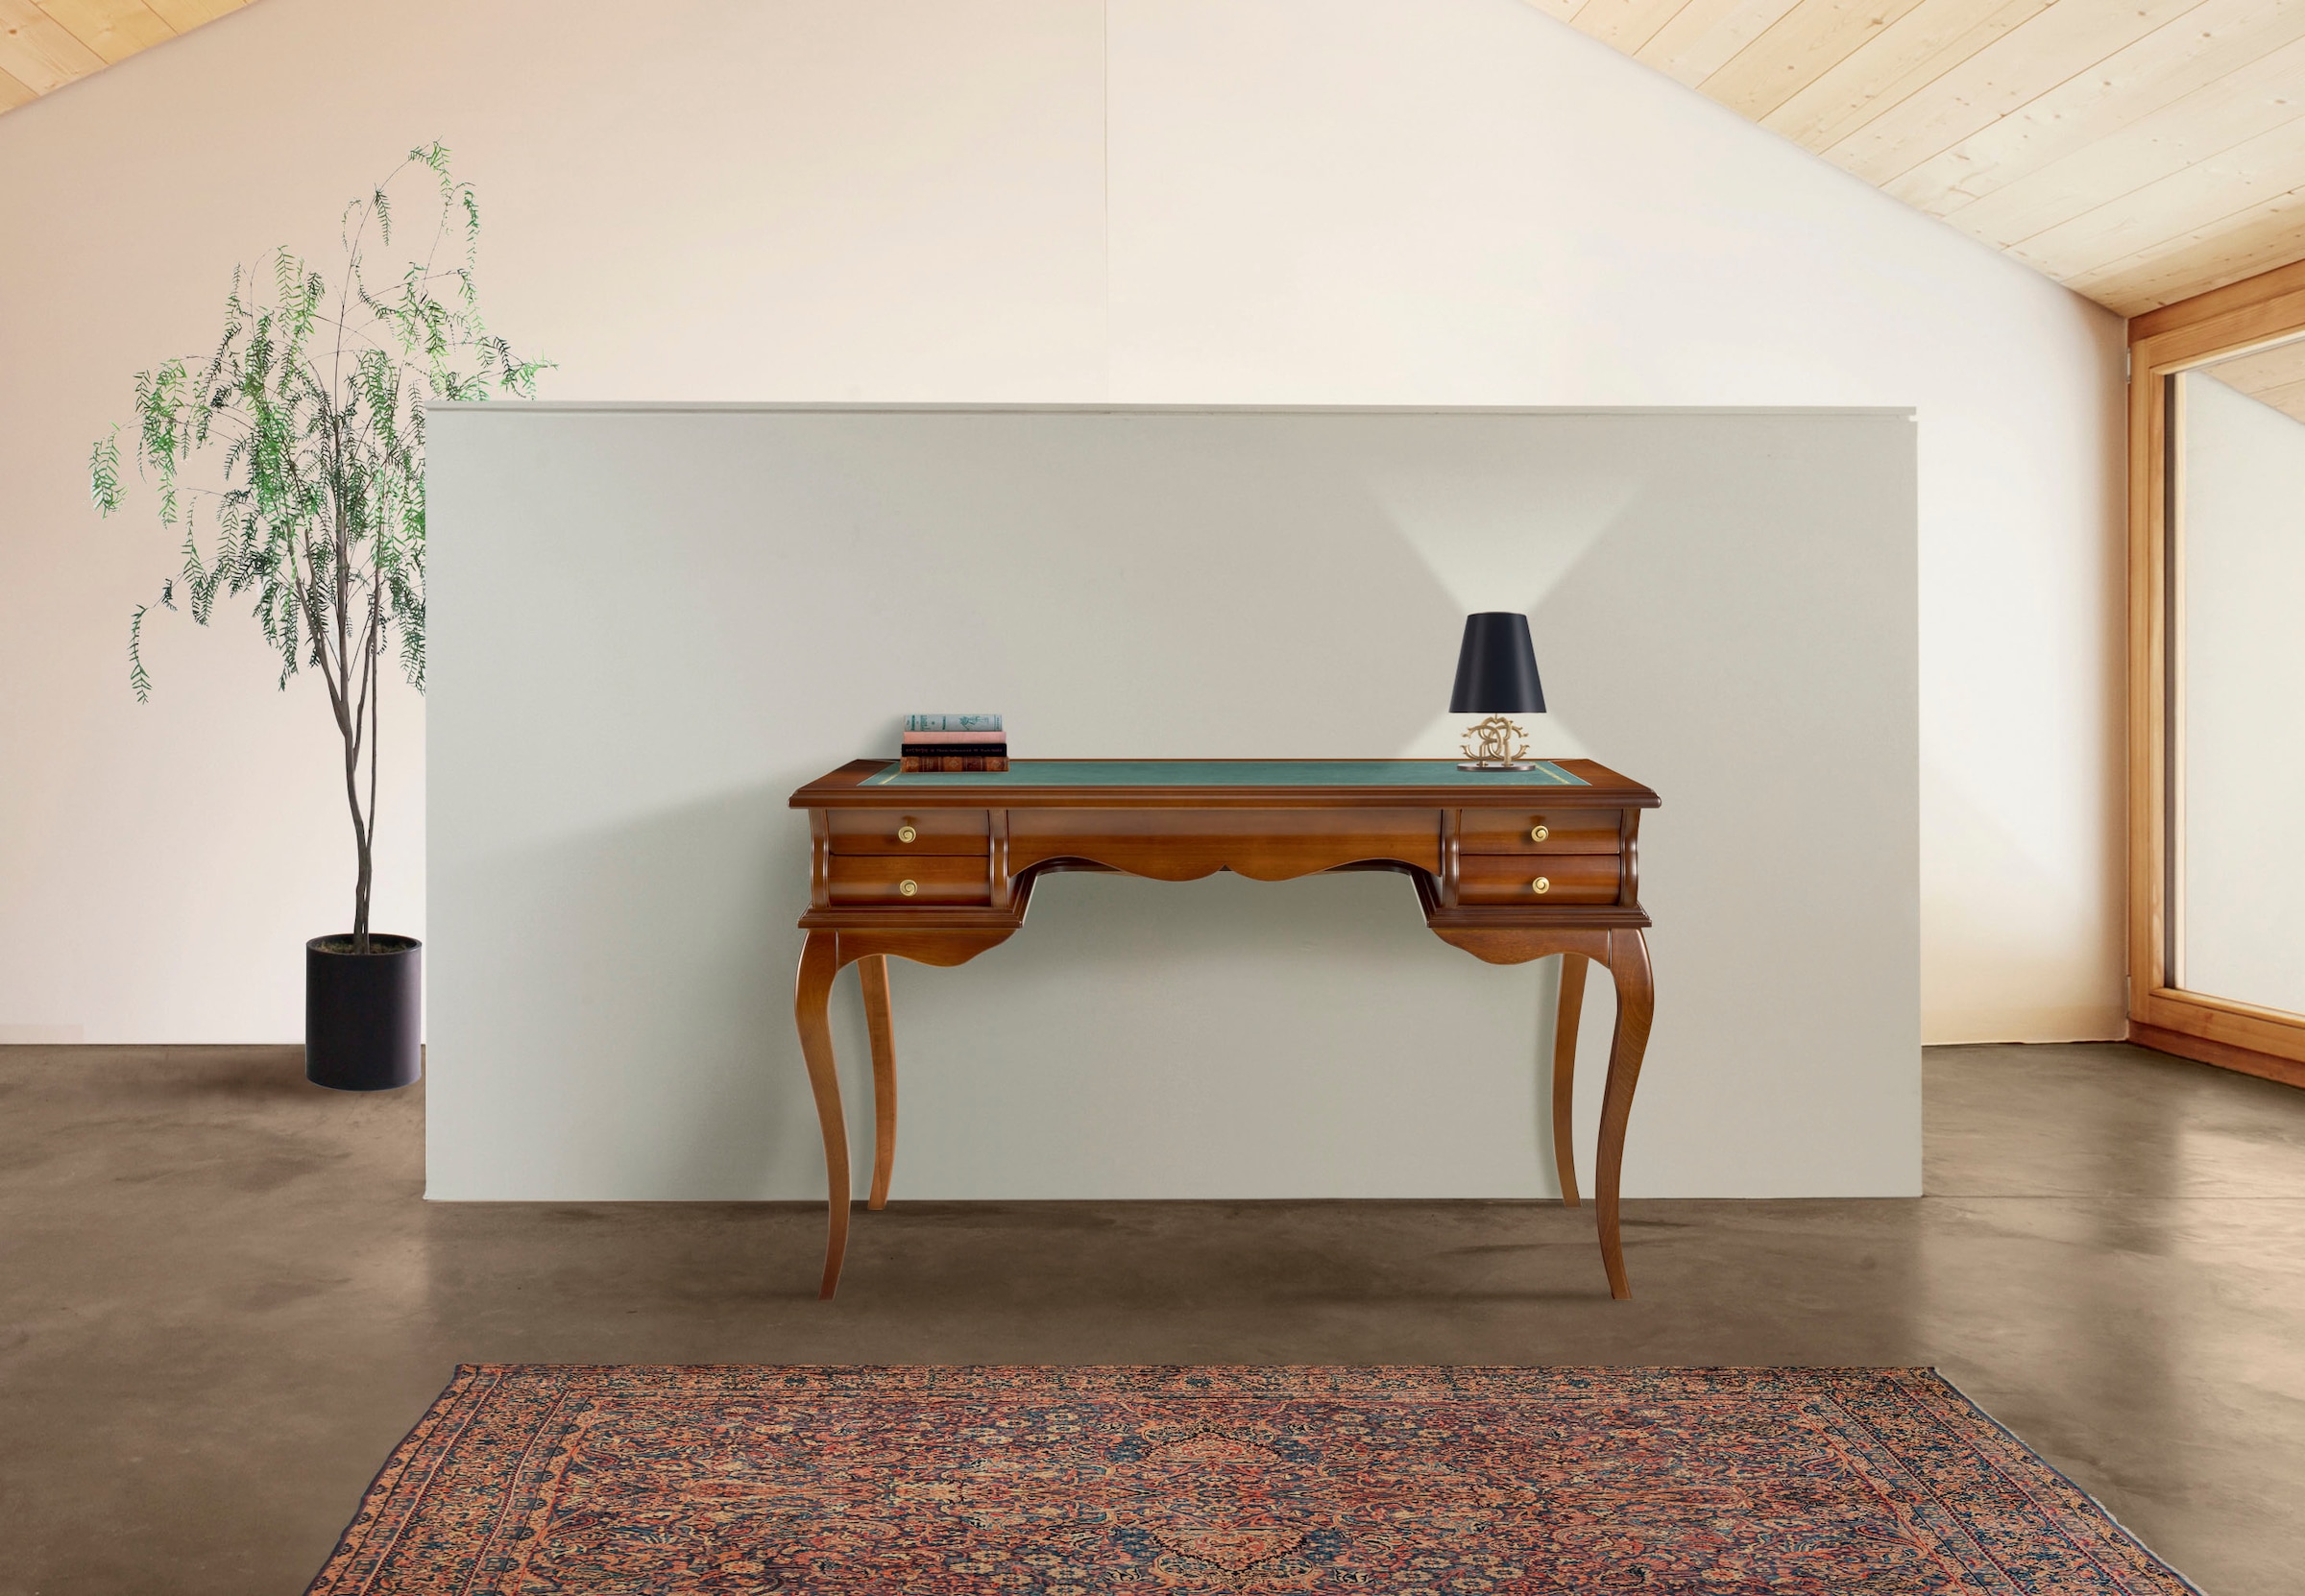 Home affaire Schreibtisch »Tische Damigella«, Breite 120 cm